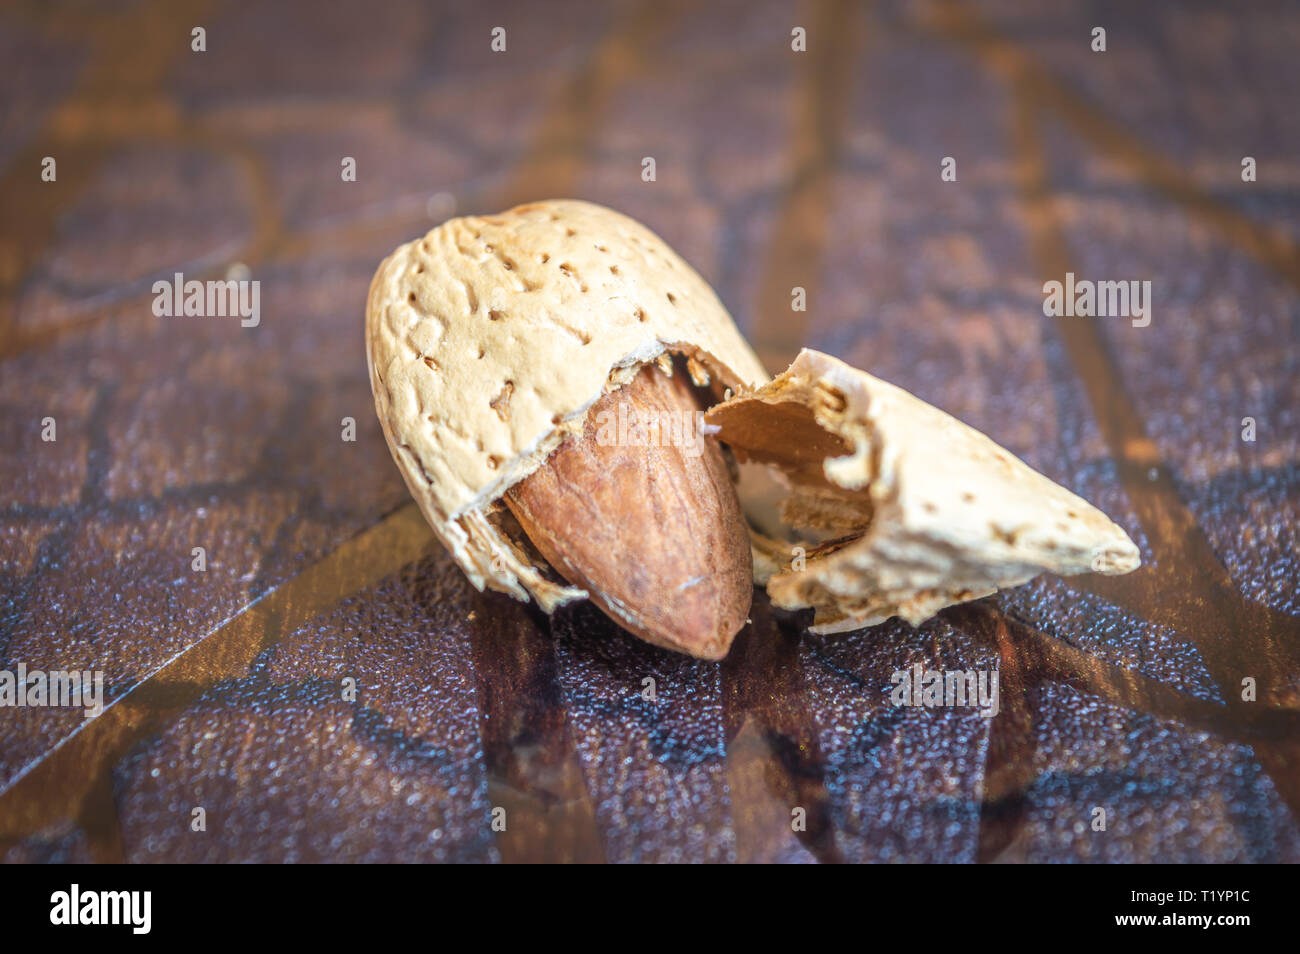 Le noyau d'Amande fruits amande amande cassée de la brown shell sur un fond en bois brun Banque D'Images